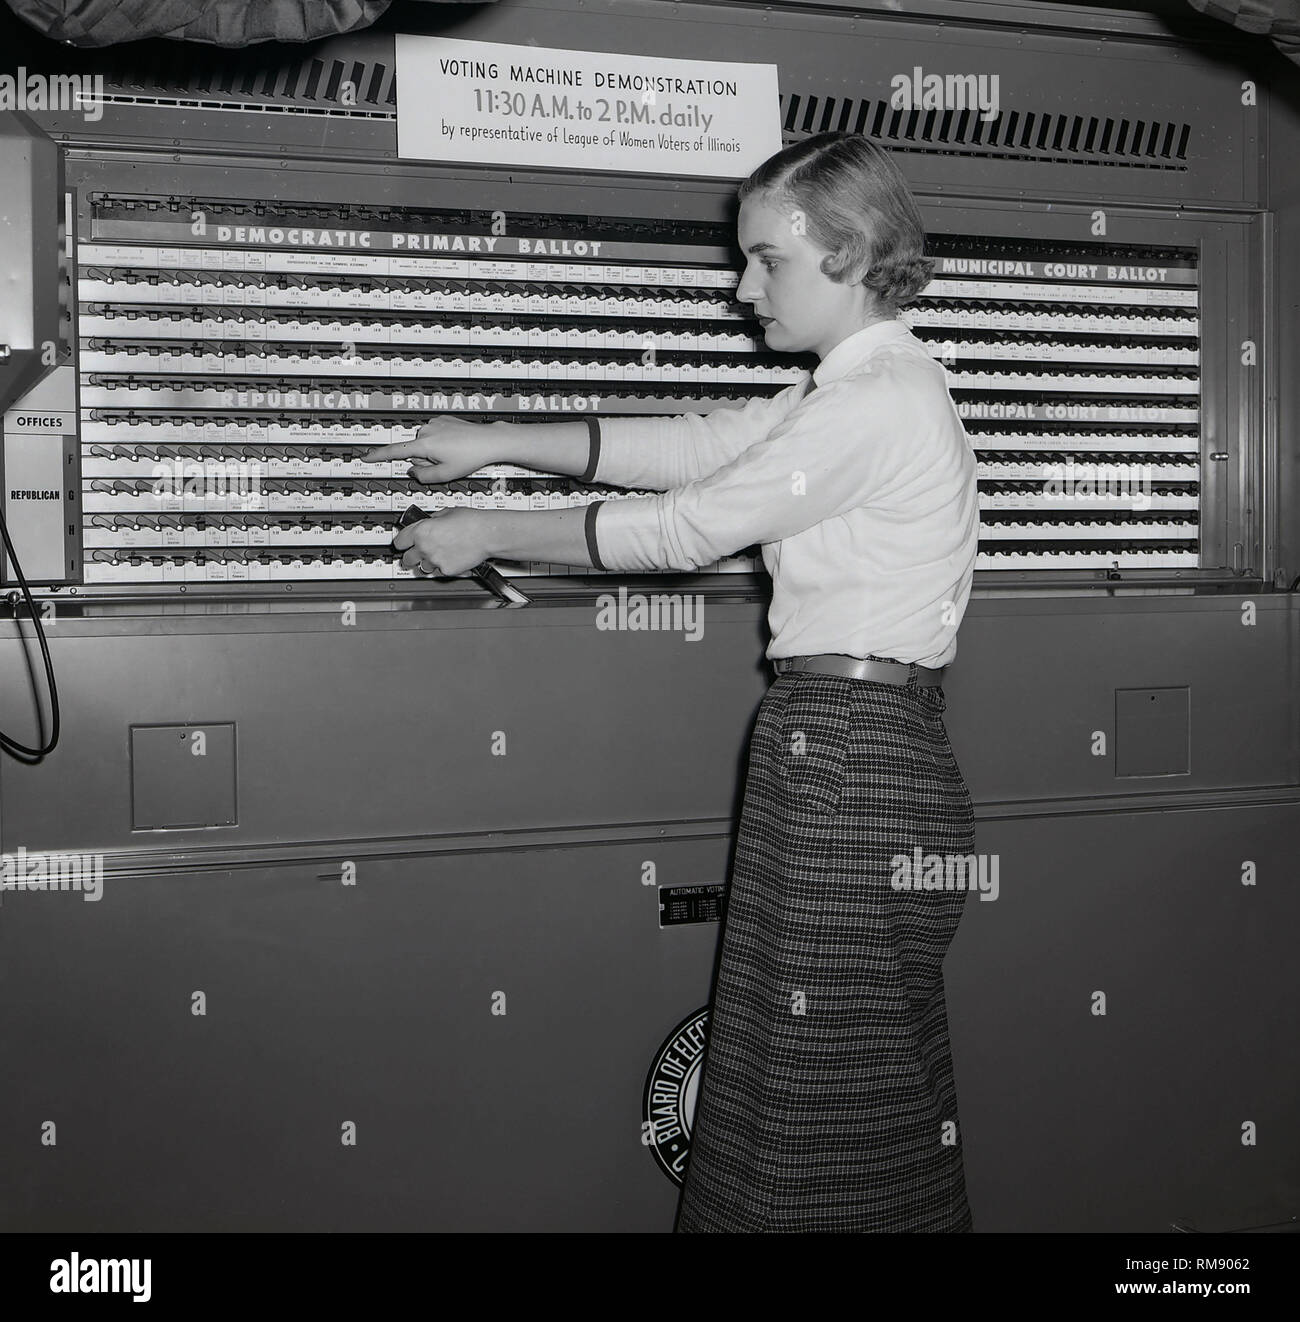 Un representante de la Liga de Mujeres Votantes de Illinois demuestra una máquina de votación en Chicago, ca. 1954. Foto de stock